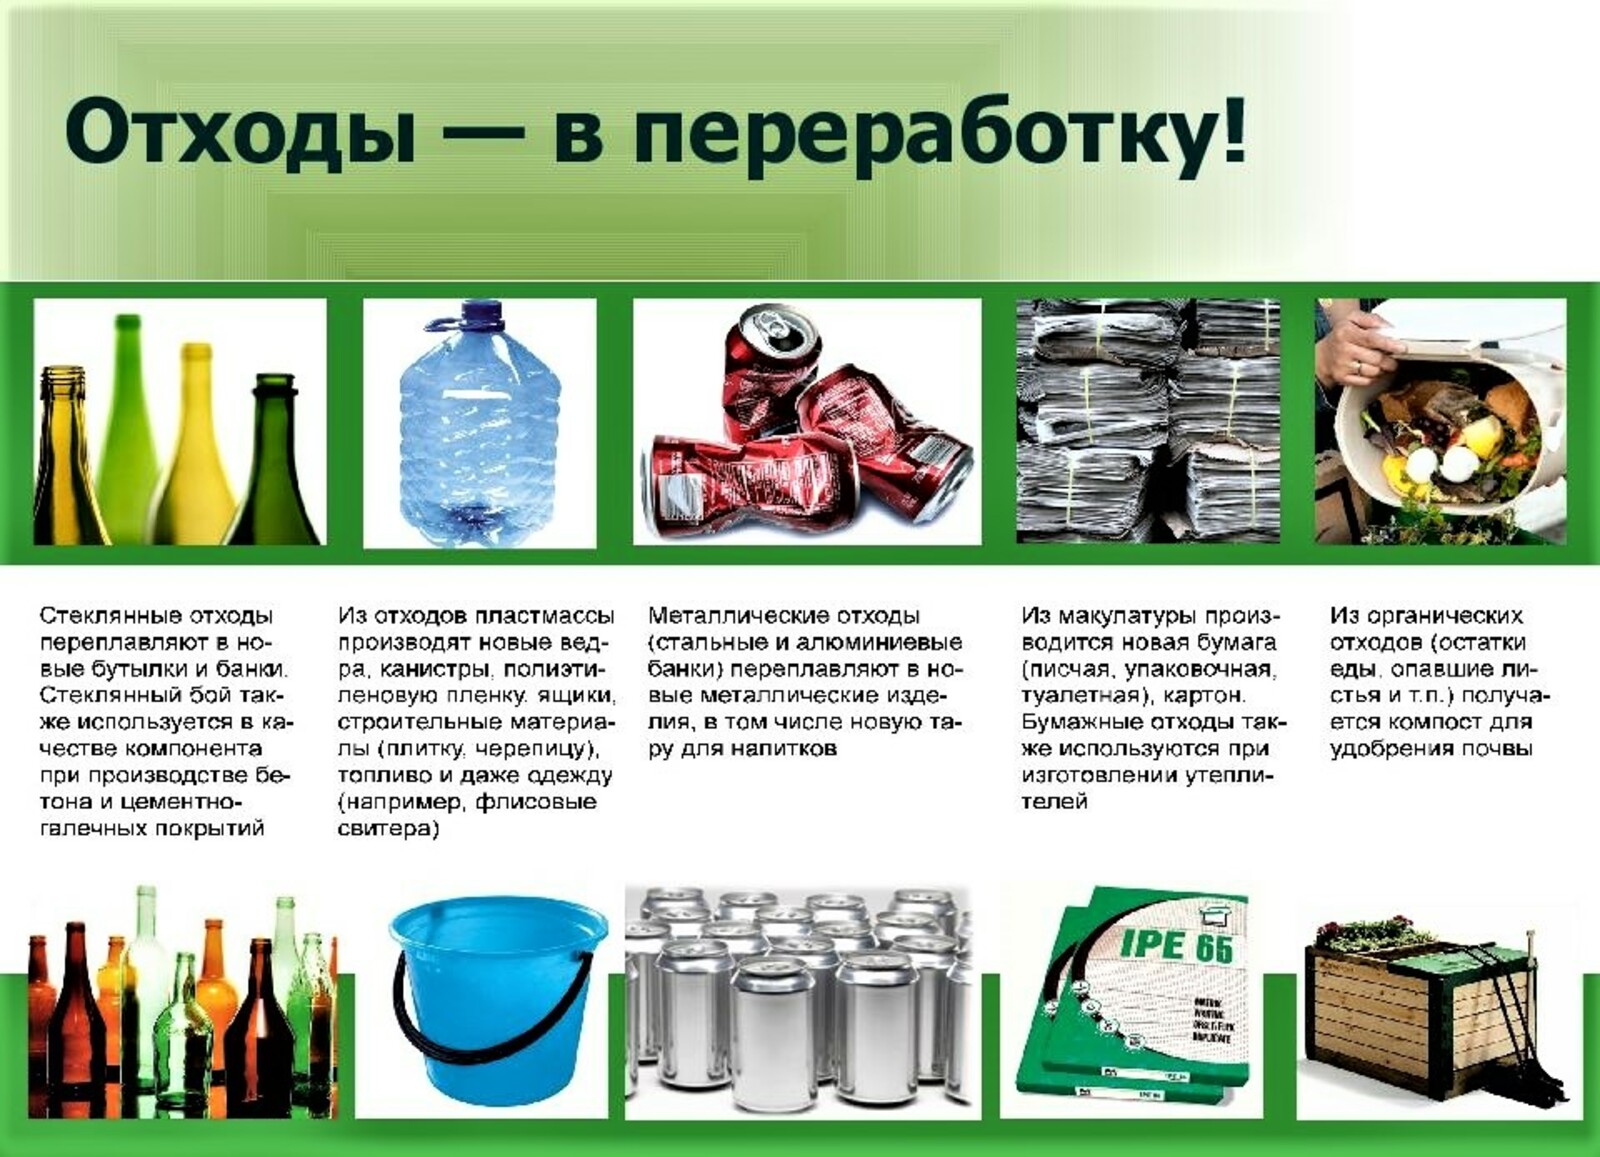 Группа бытовых отходов. Химический метод переработки отходов. Способы вторичной переработки бытовых отходов. Типы отходов и их переработка.